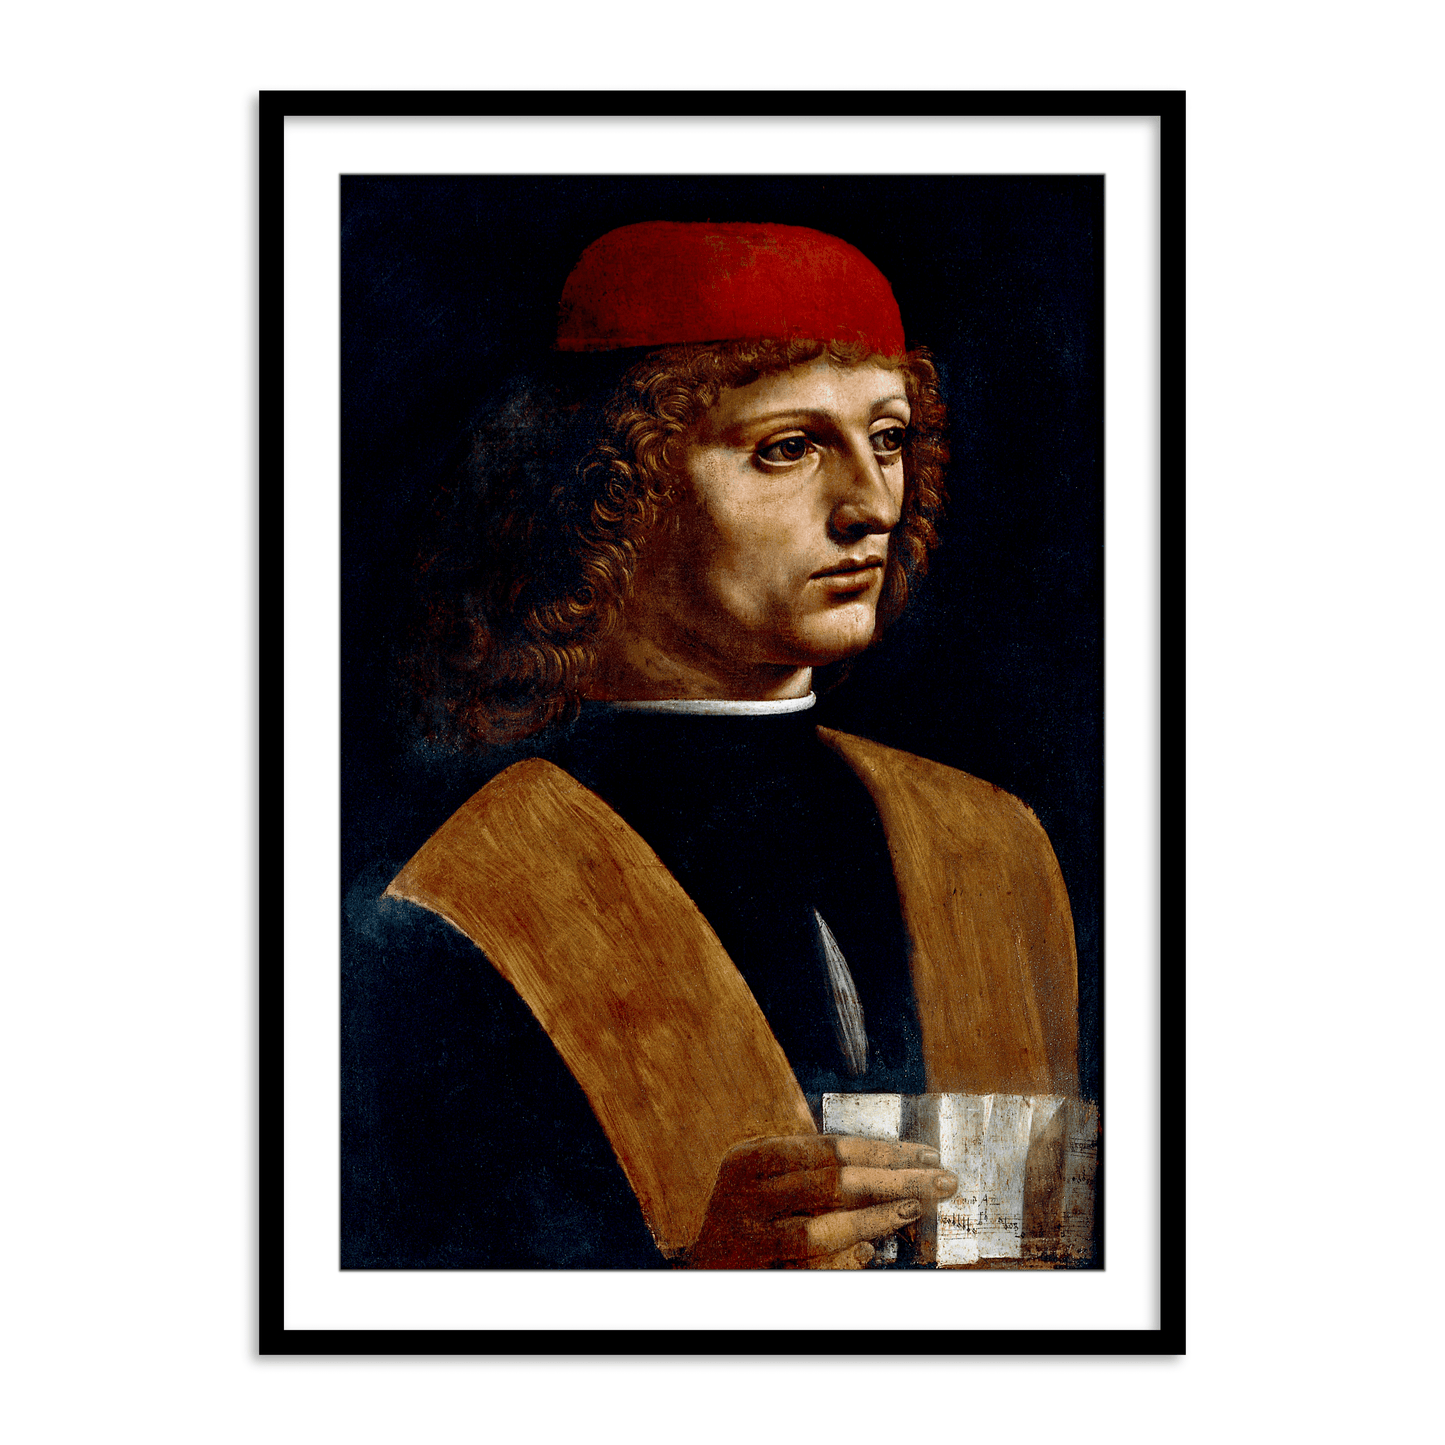 The Portrait of a Musician by Leonardo da Vinci